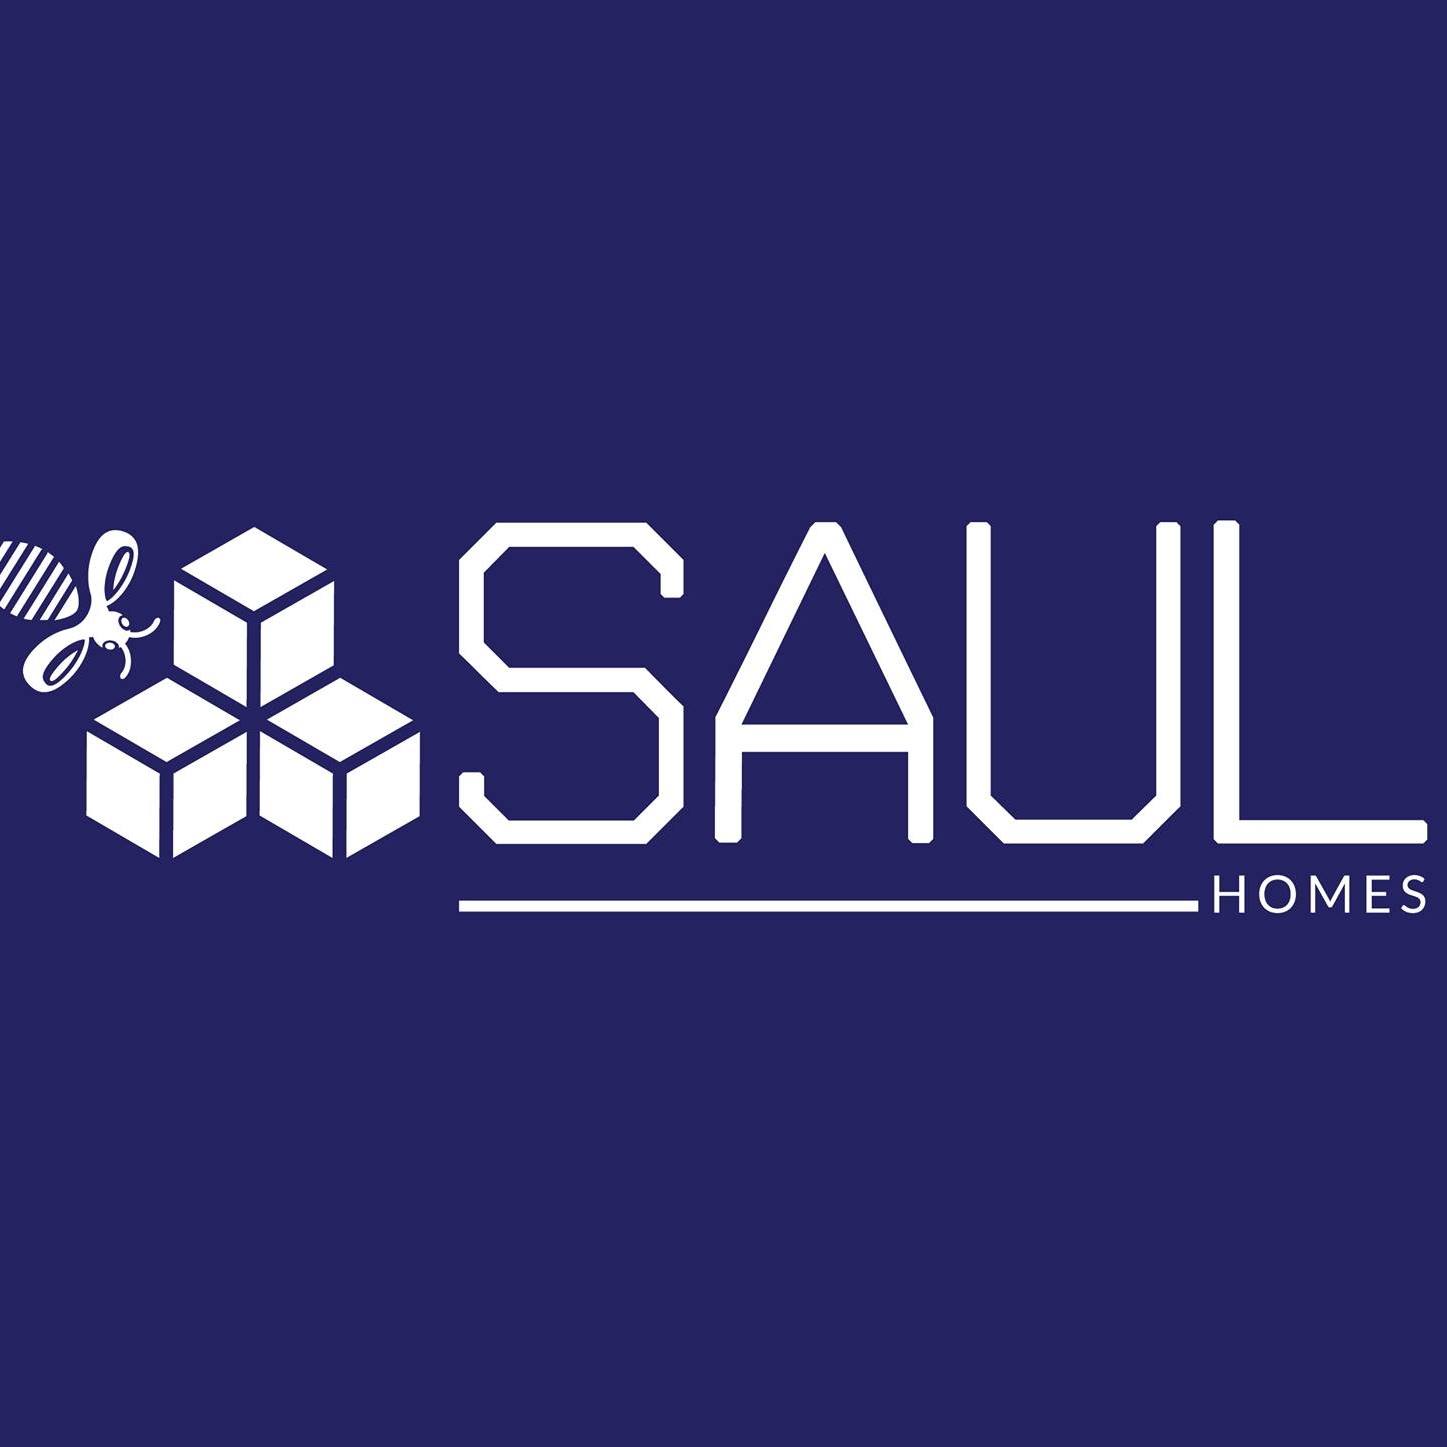 Saul Homes